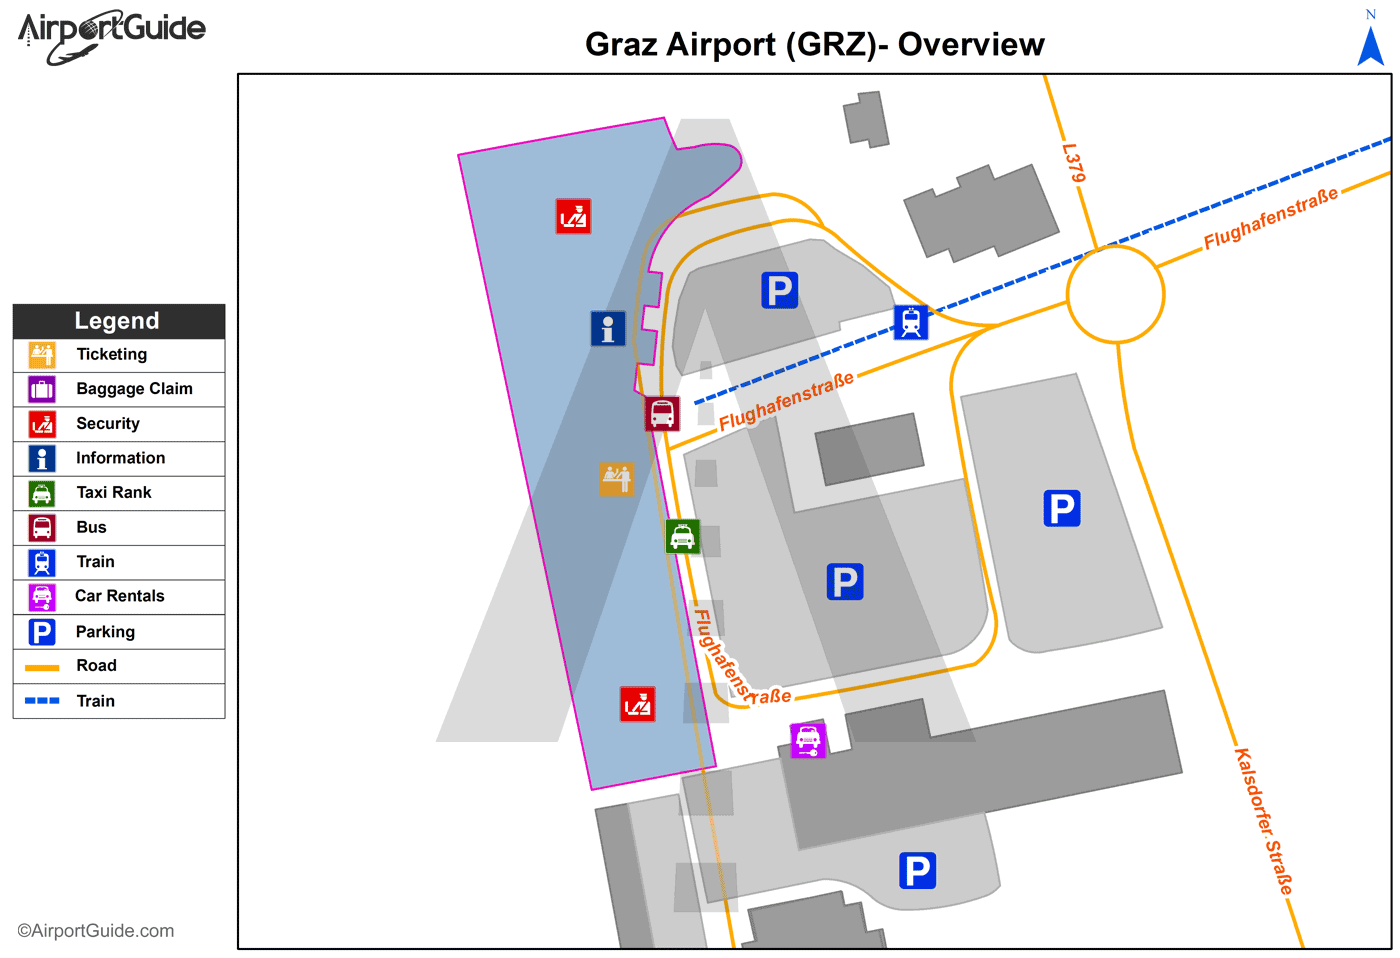 Graz - Graz (GRZ) Airport Terminal Map - Overview